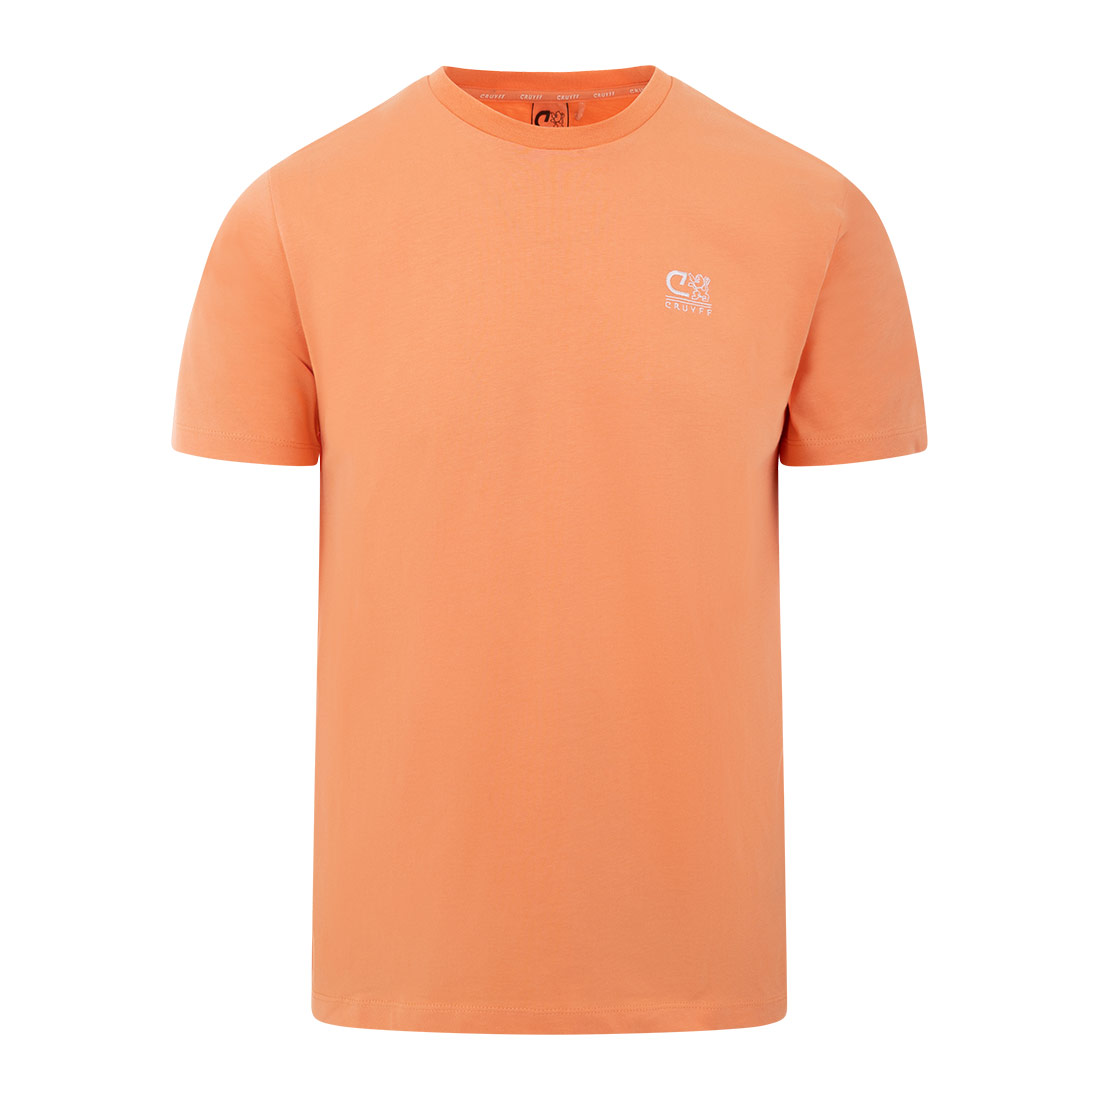 Cruyff energizedtee in de kleur oranje.